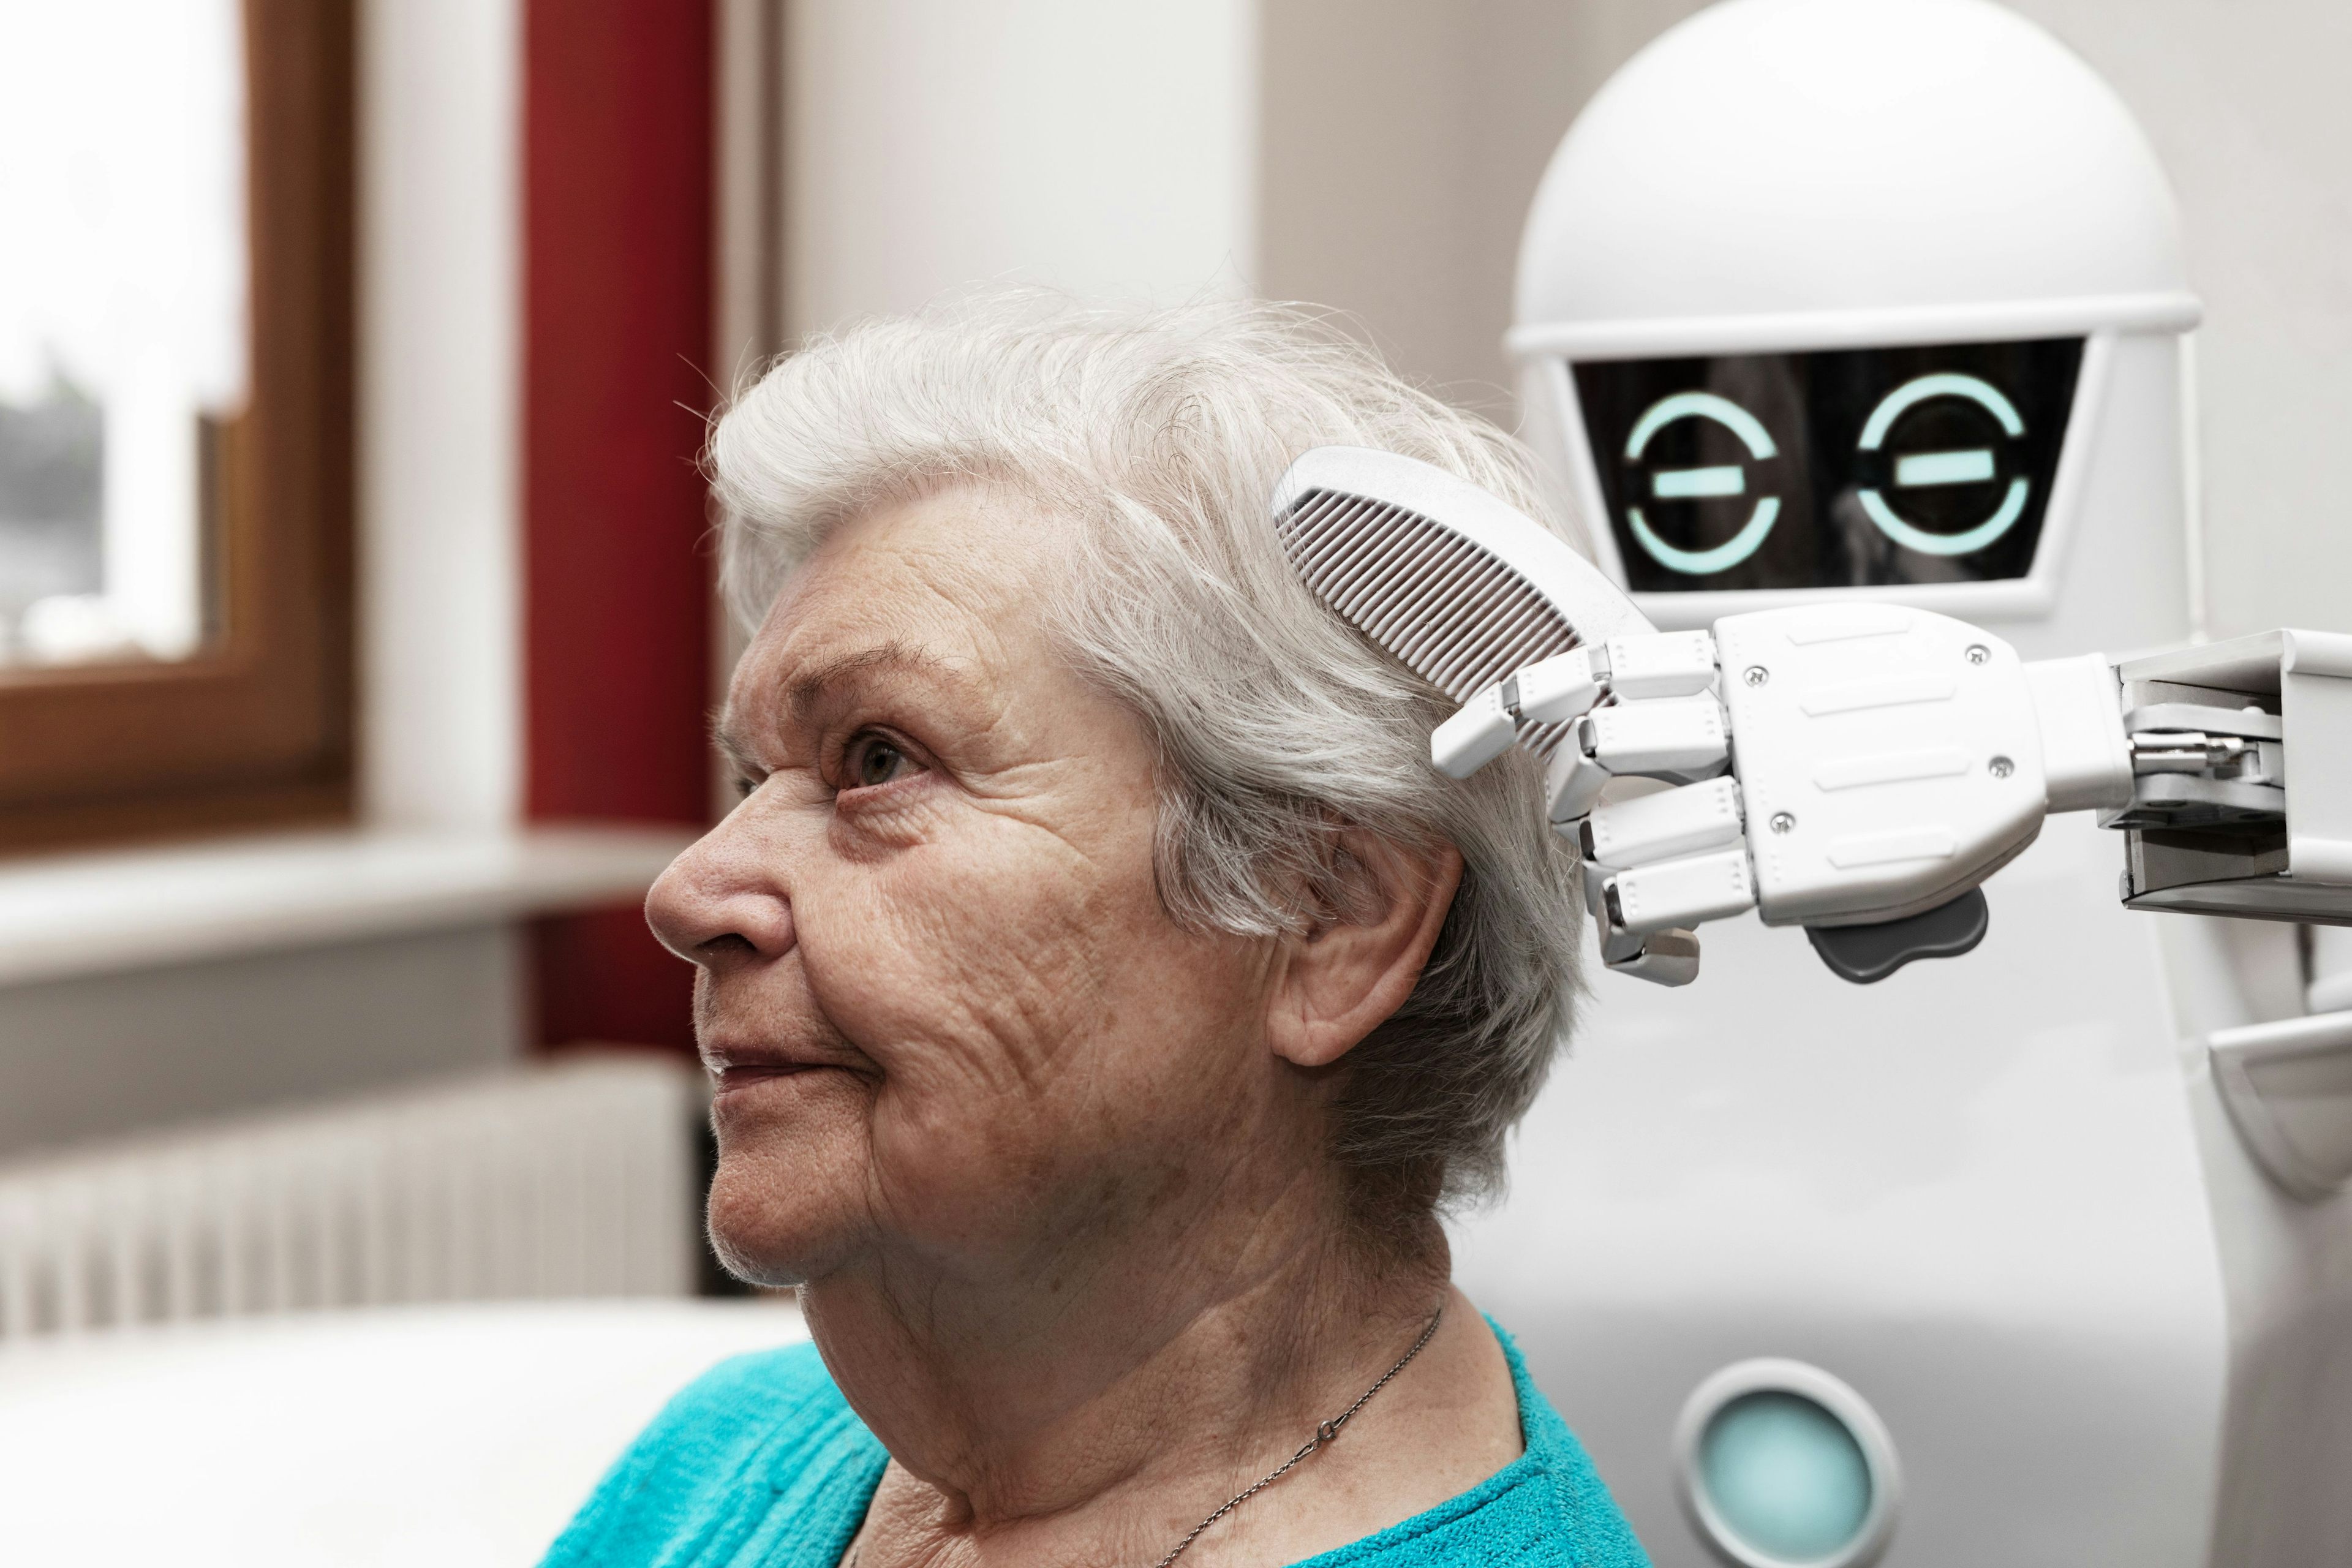 Herr Stadelmann, werden einst Roboter unsere Alten pflegen?